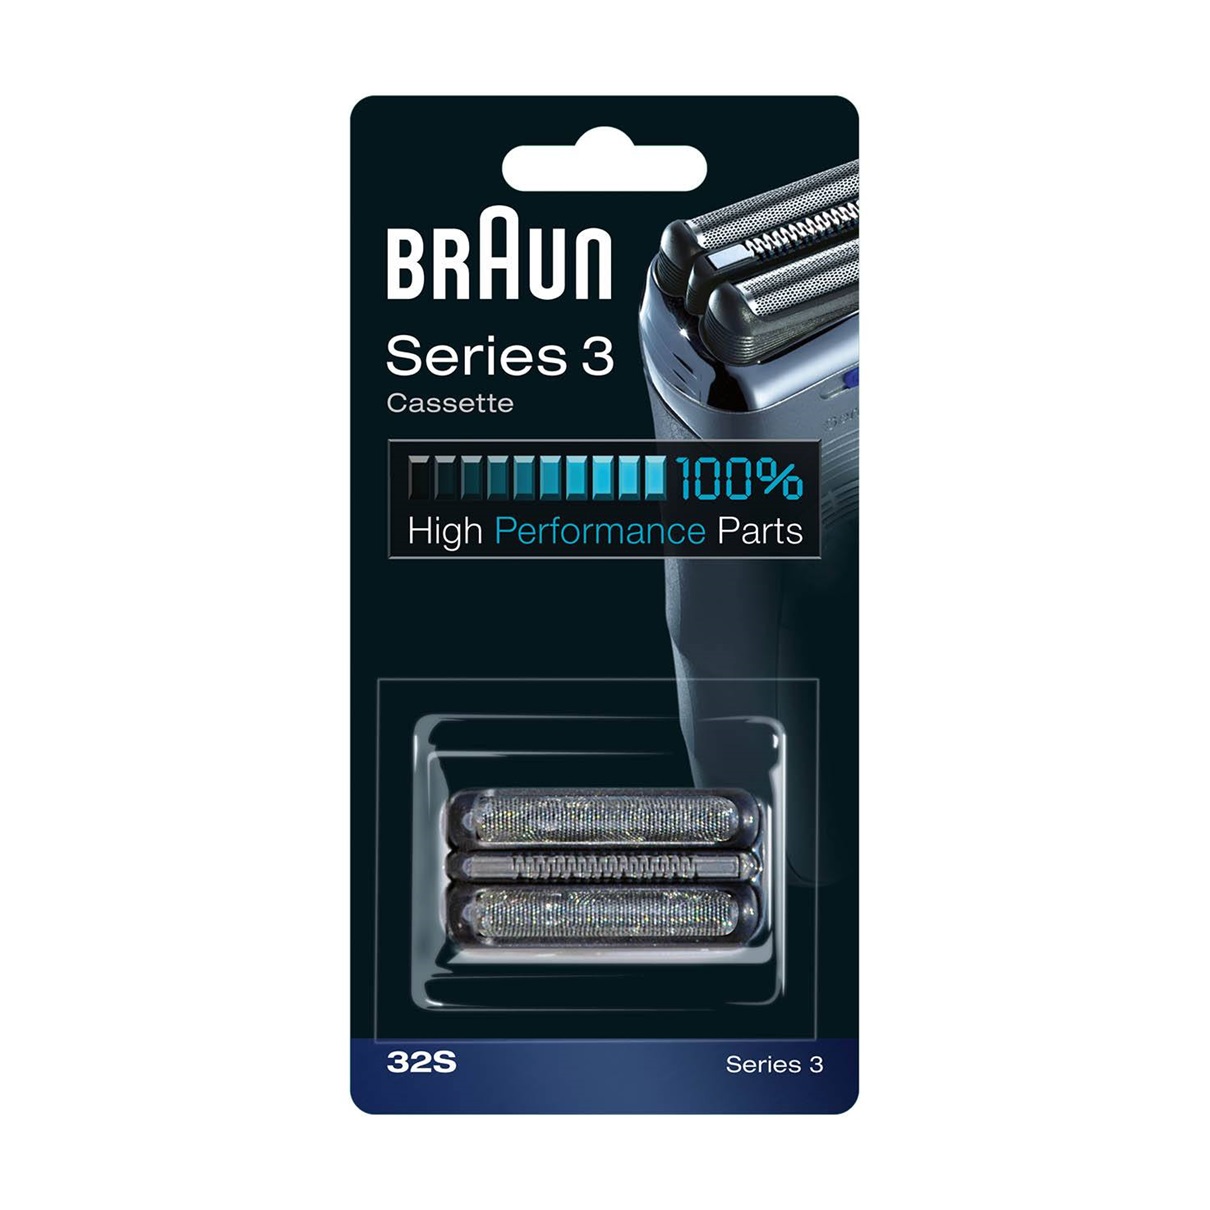 Сетка и режущий блок для бритв Braun 32S сетка для бритв braun серии 1000 2000 597